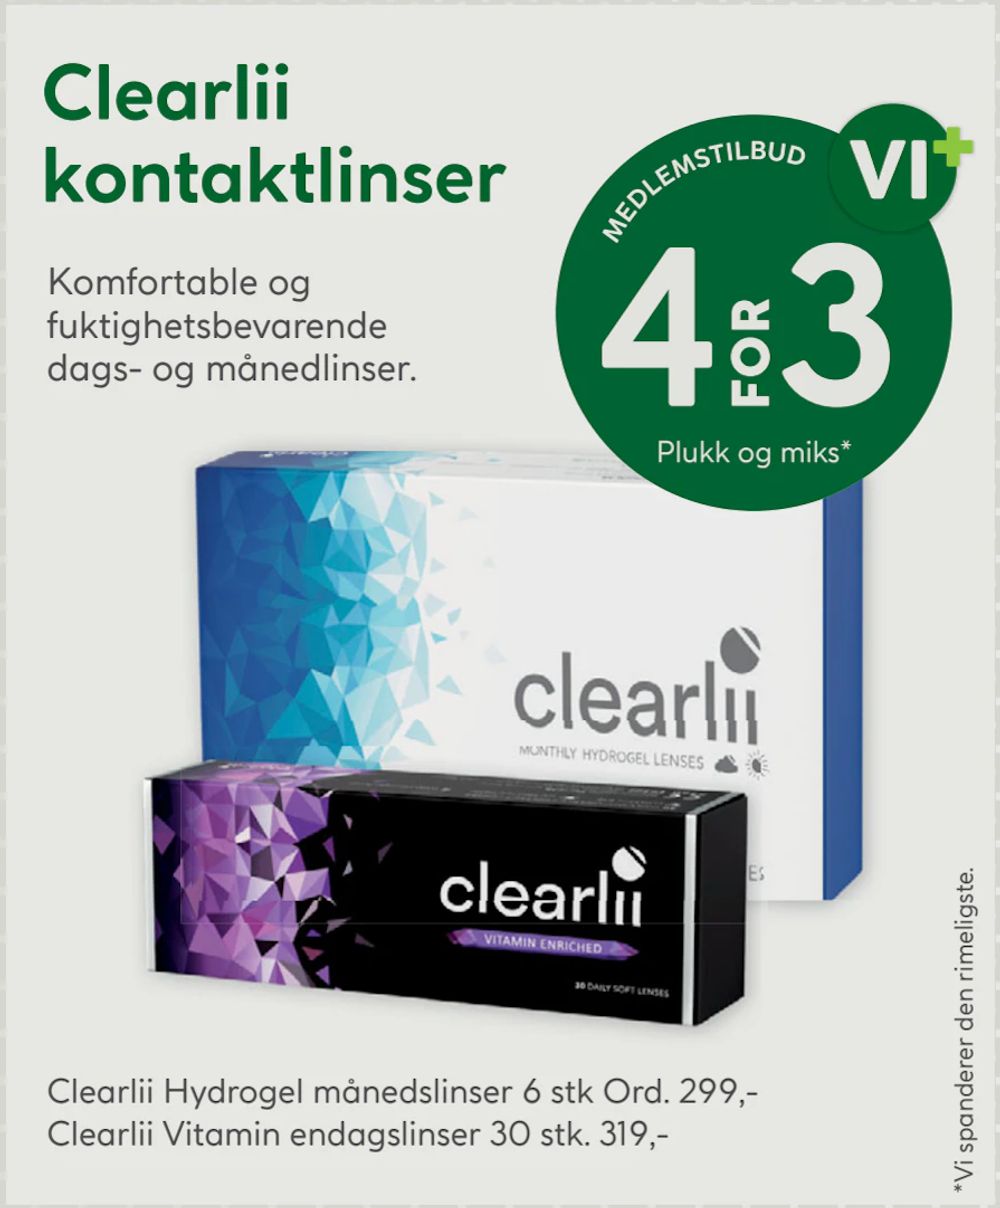 Tilbud på Clearlii Vitamin endagslinser fra Vitusapotek til 319 kr